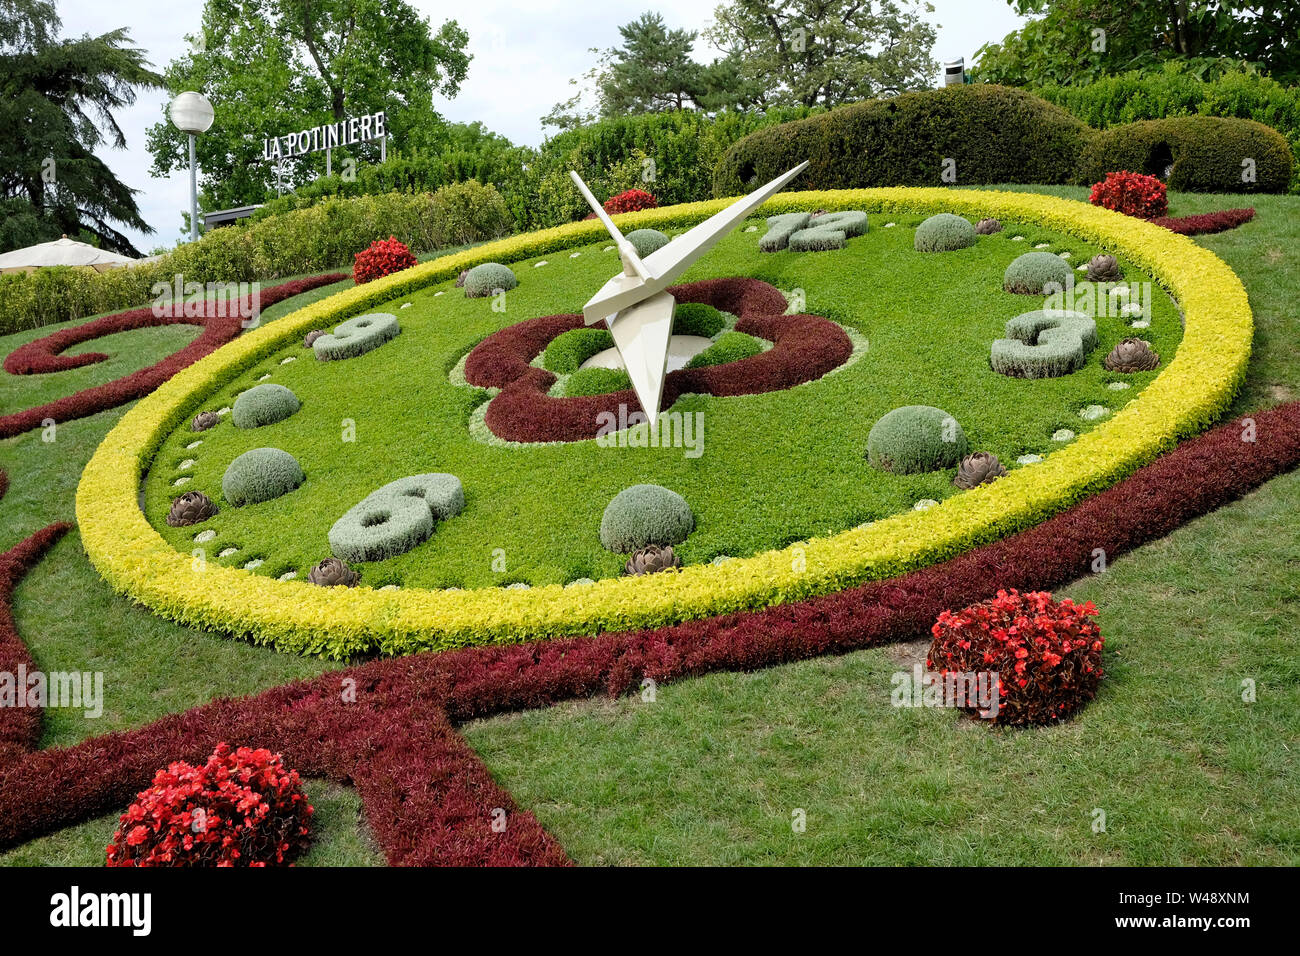 Una vista generale dell'orologio di fiori di Ginevra in Svizzera Foto Stock